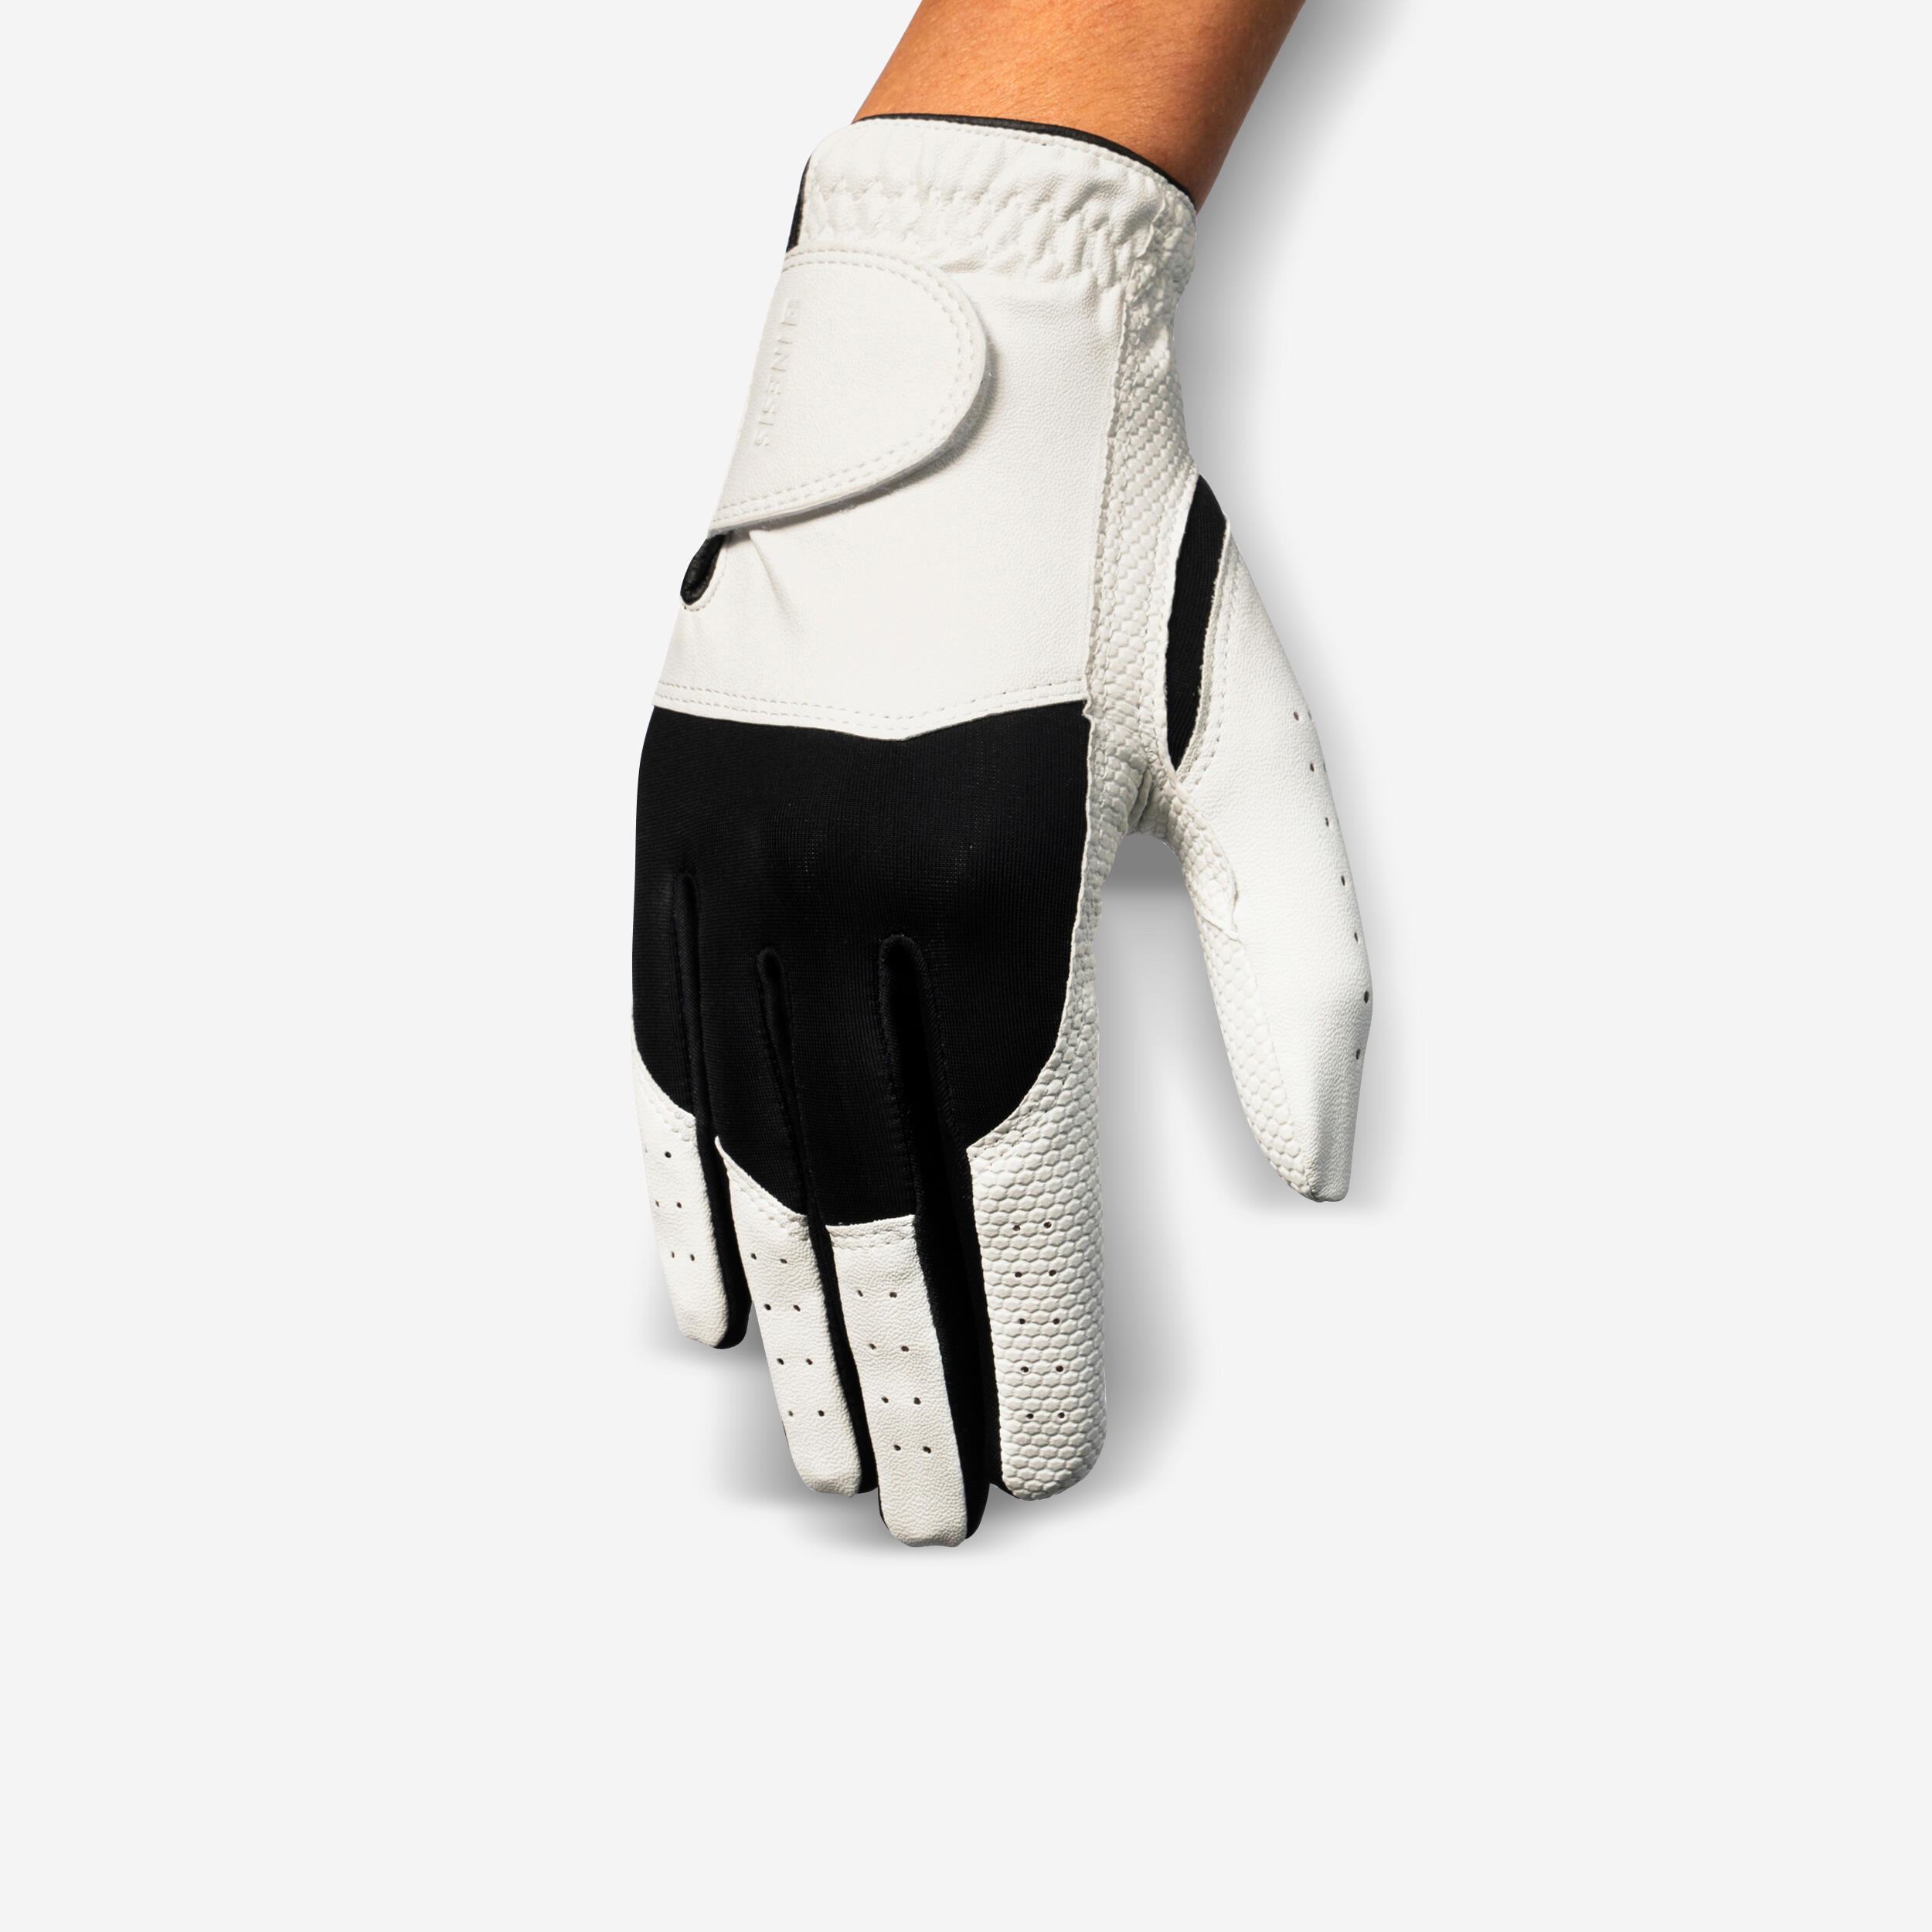 Women’s LH Golf Glove